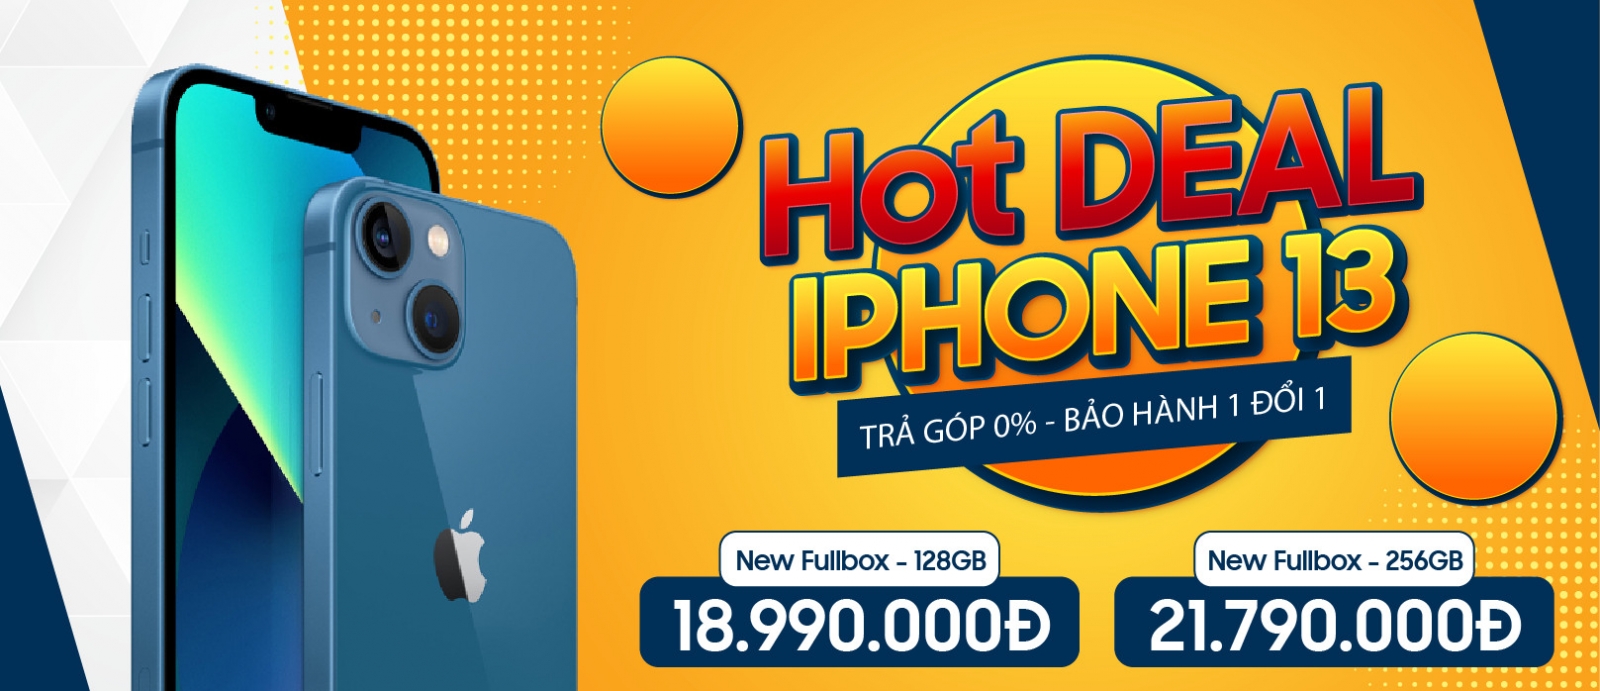 Hot Deal iPhone13 - Giá Cực Tốt